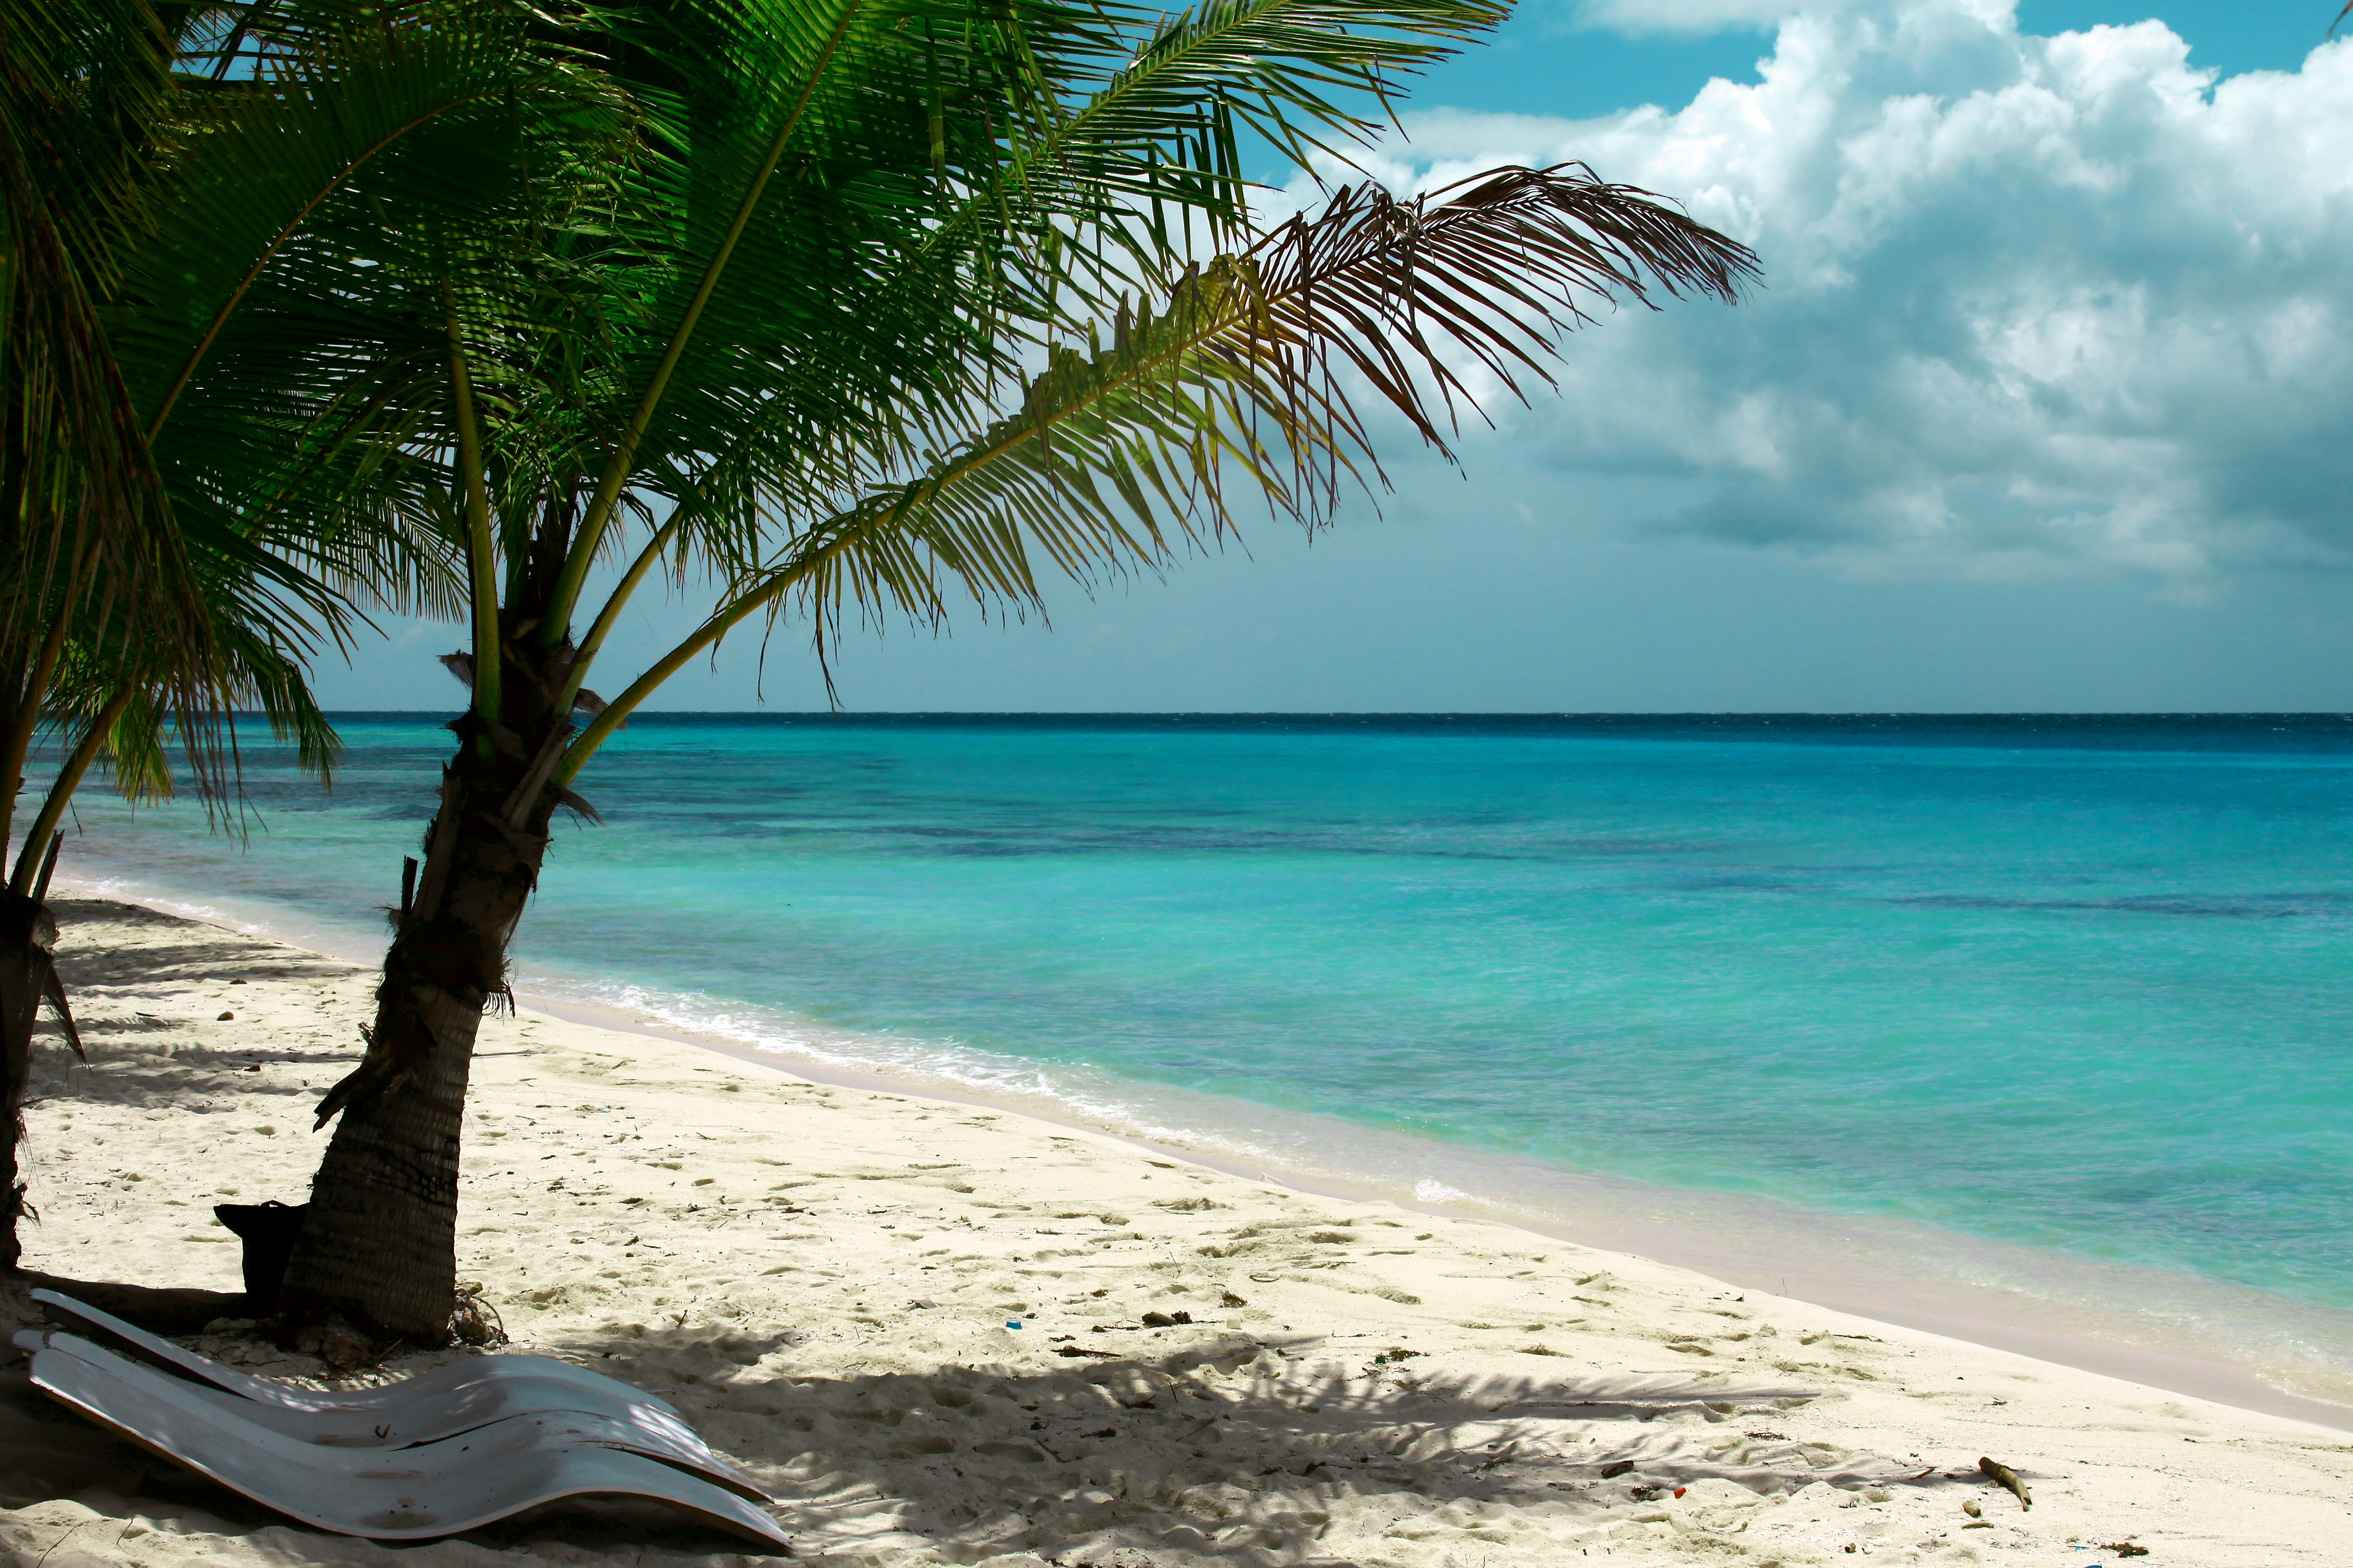 Фото пляжа с пальмами и морем